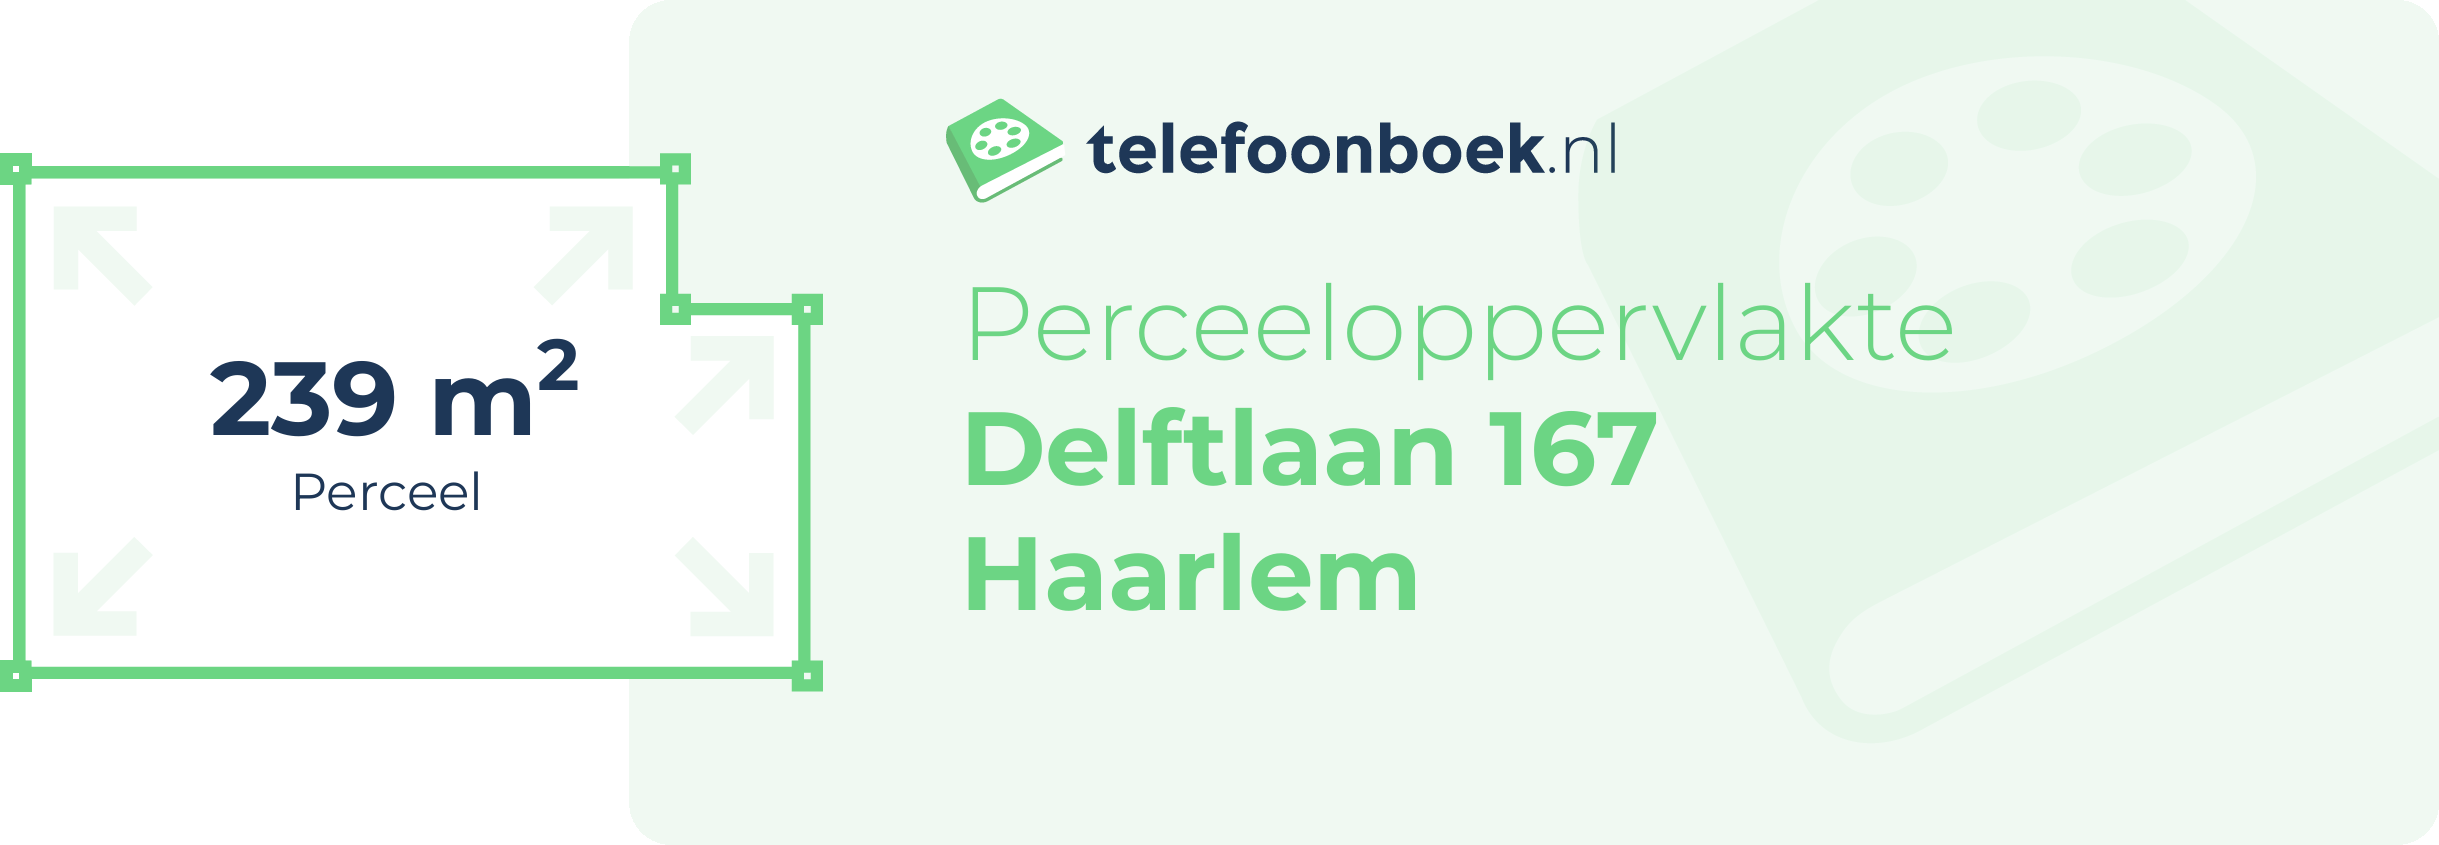 Perceeloppervlakte Delftlaan 167 Haarlem